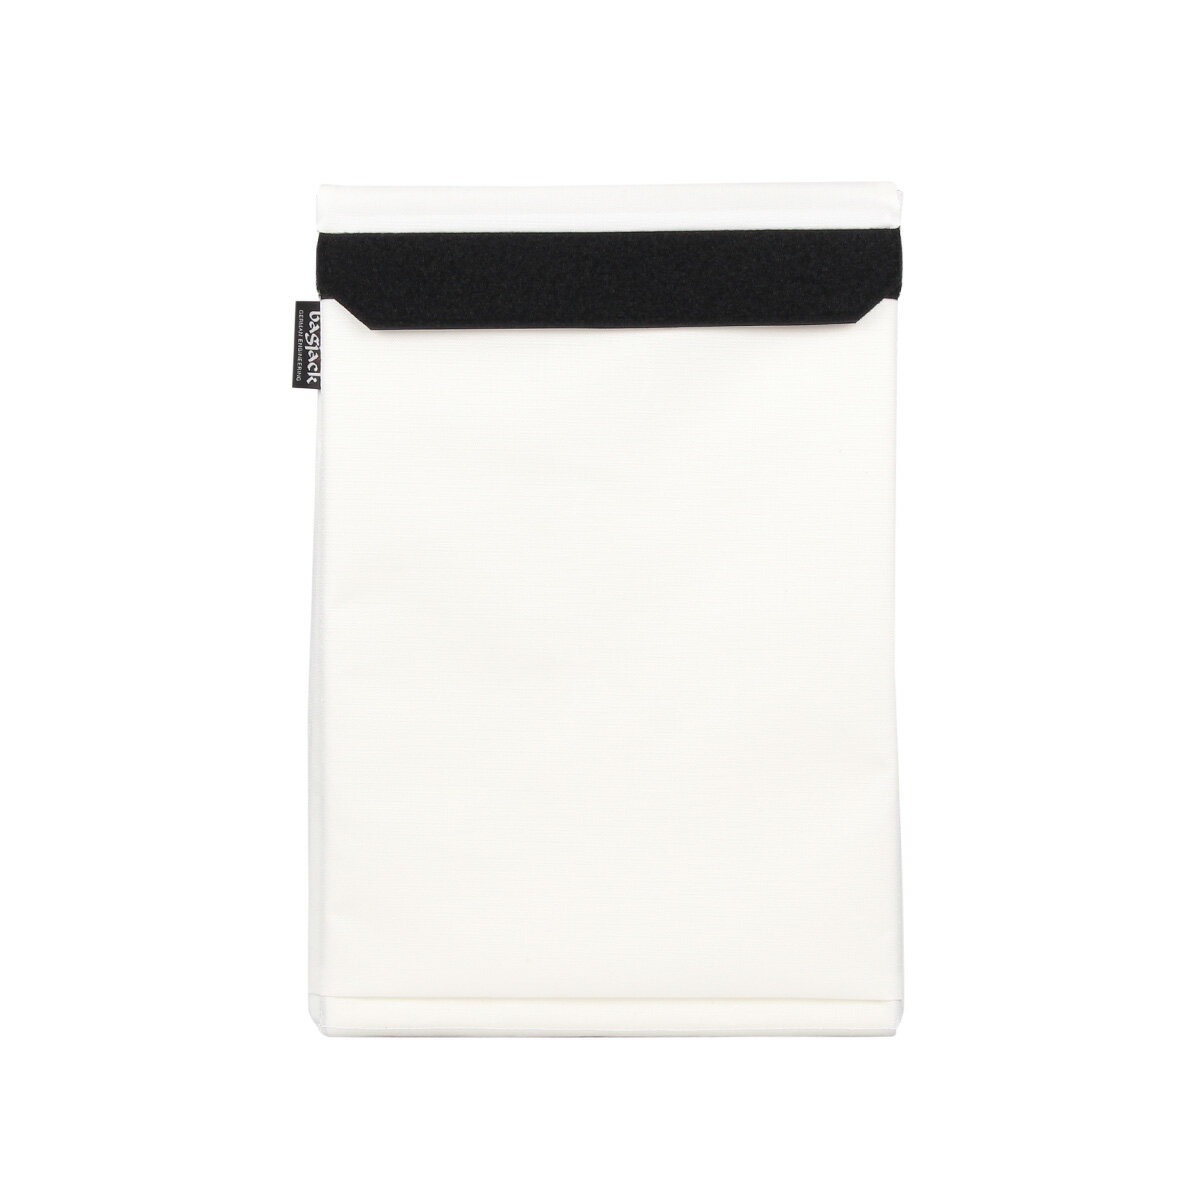 bagjack LAPTOP COVER バッグジャック PCケース PCバッグ パソコンケース メンズ レディース 15インチ対応 ブラック ホワイト 黒 白